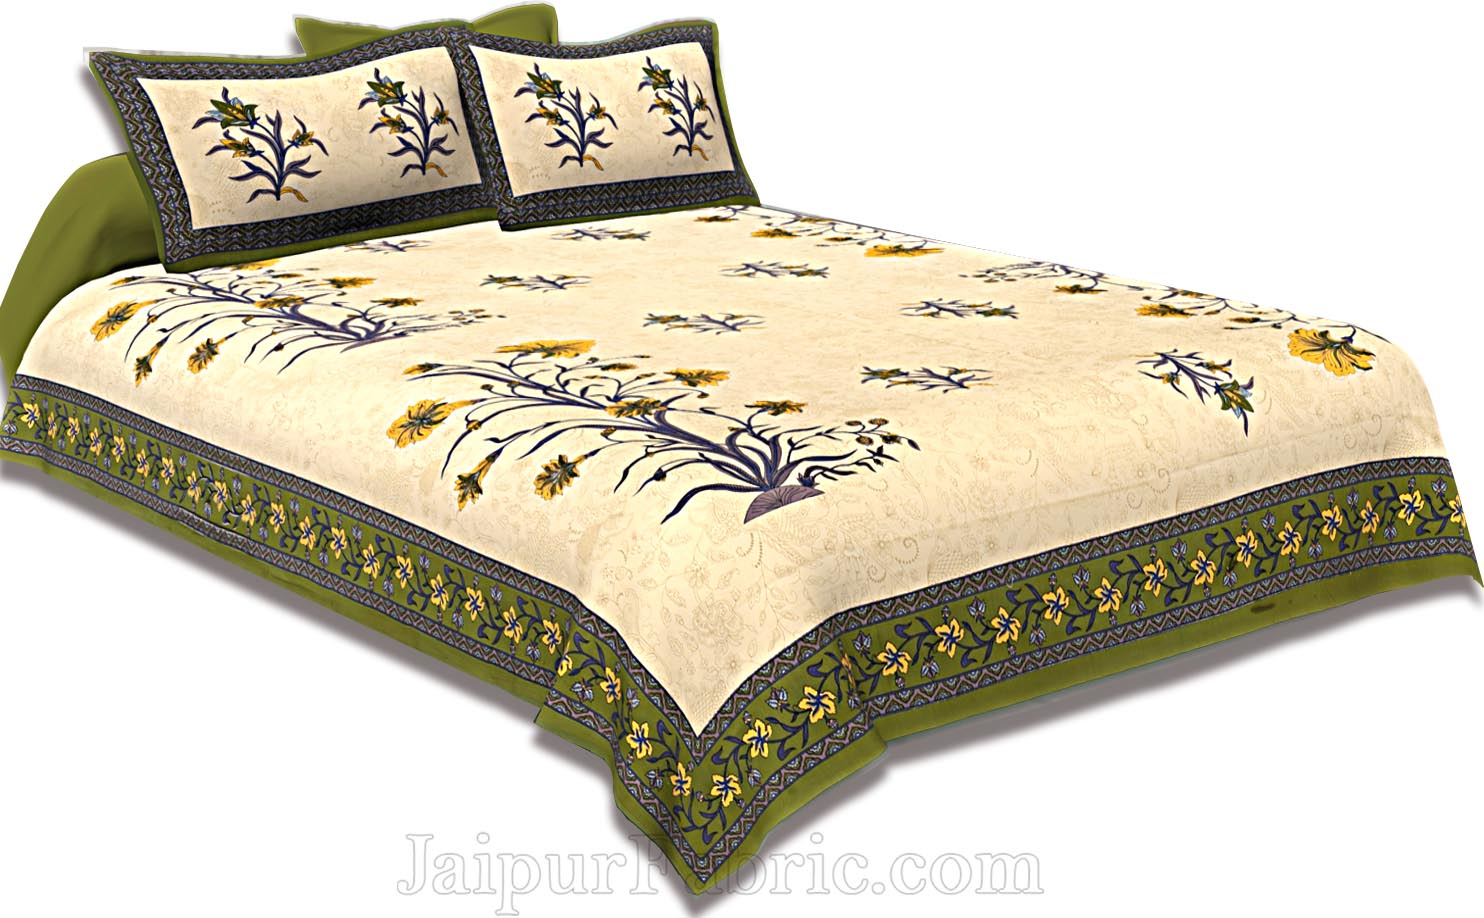 Green Border Tropical keri Design Cotton Double Bed Sheet